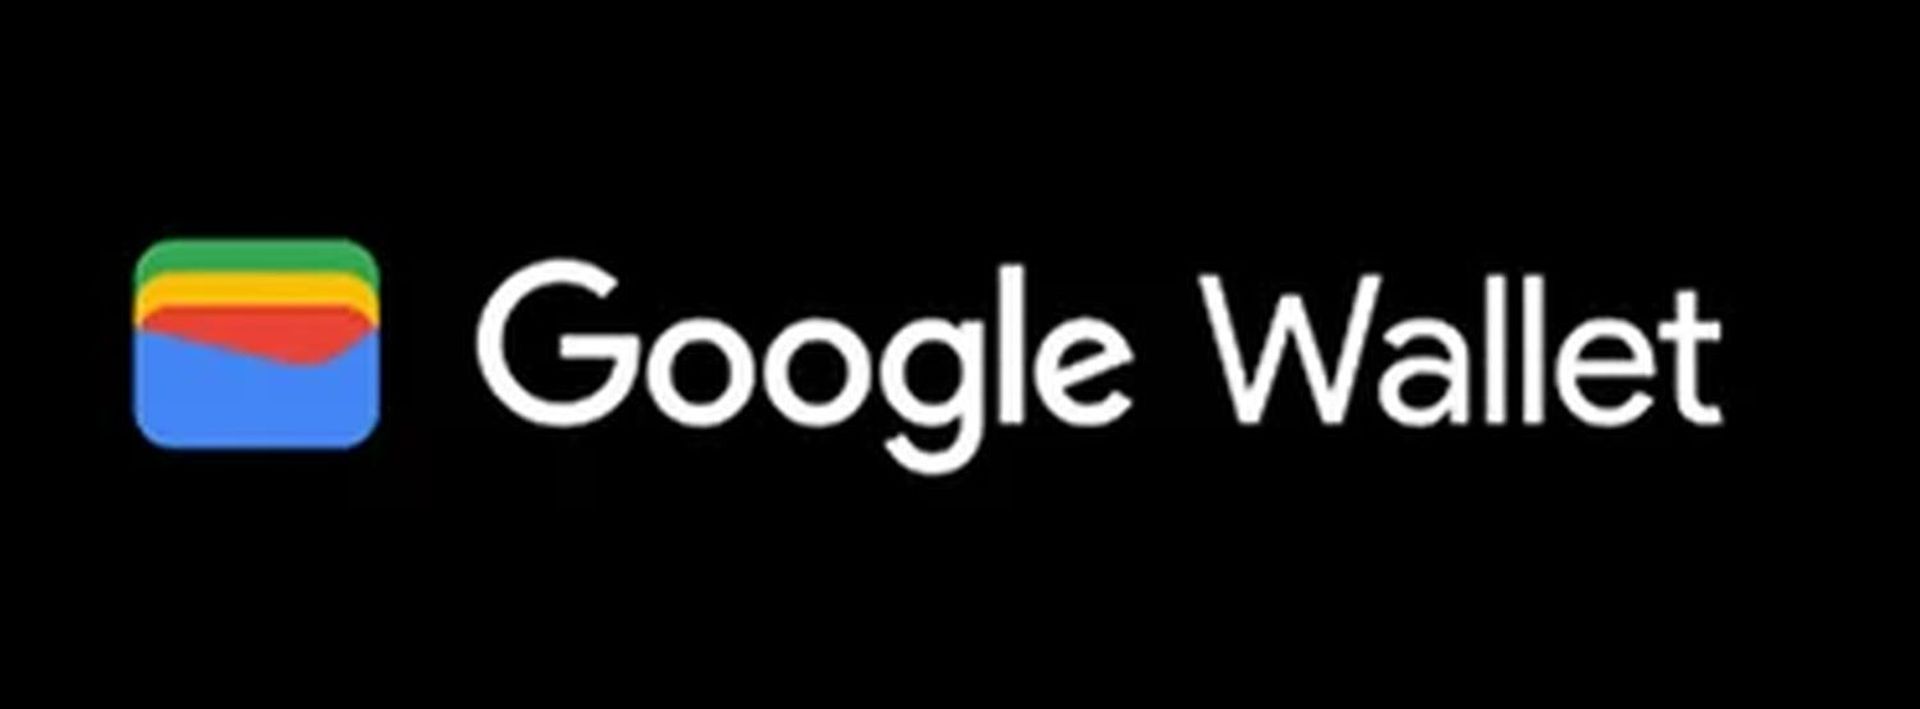 Lär dig varför Google Wallet inte fungerar med vår omfattande guide! Det finns också Google Wallet-alternativ värda att prova. Utforska nu!